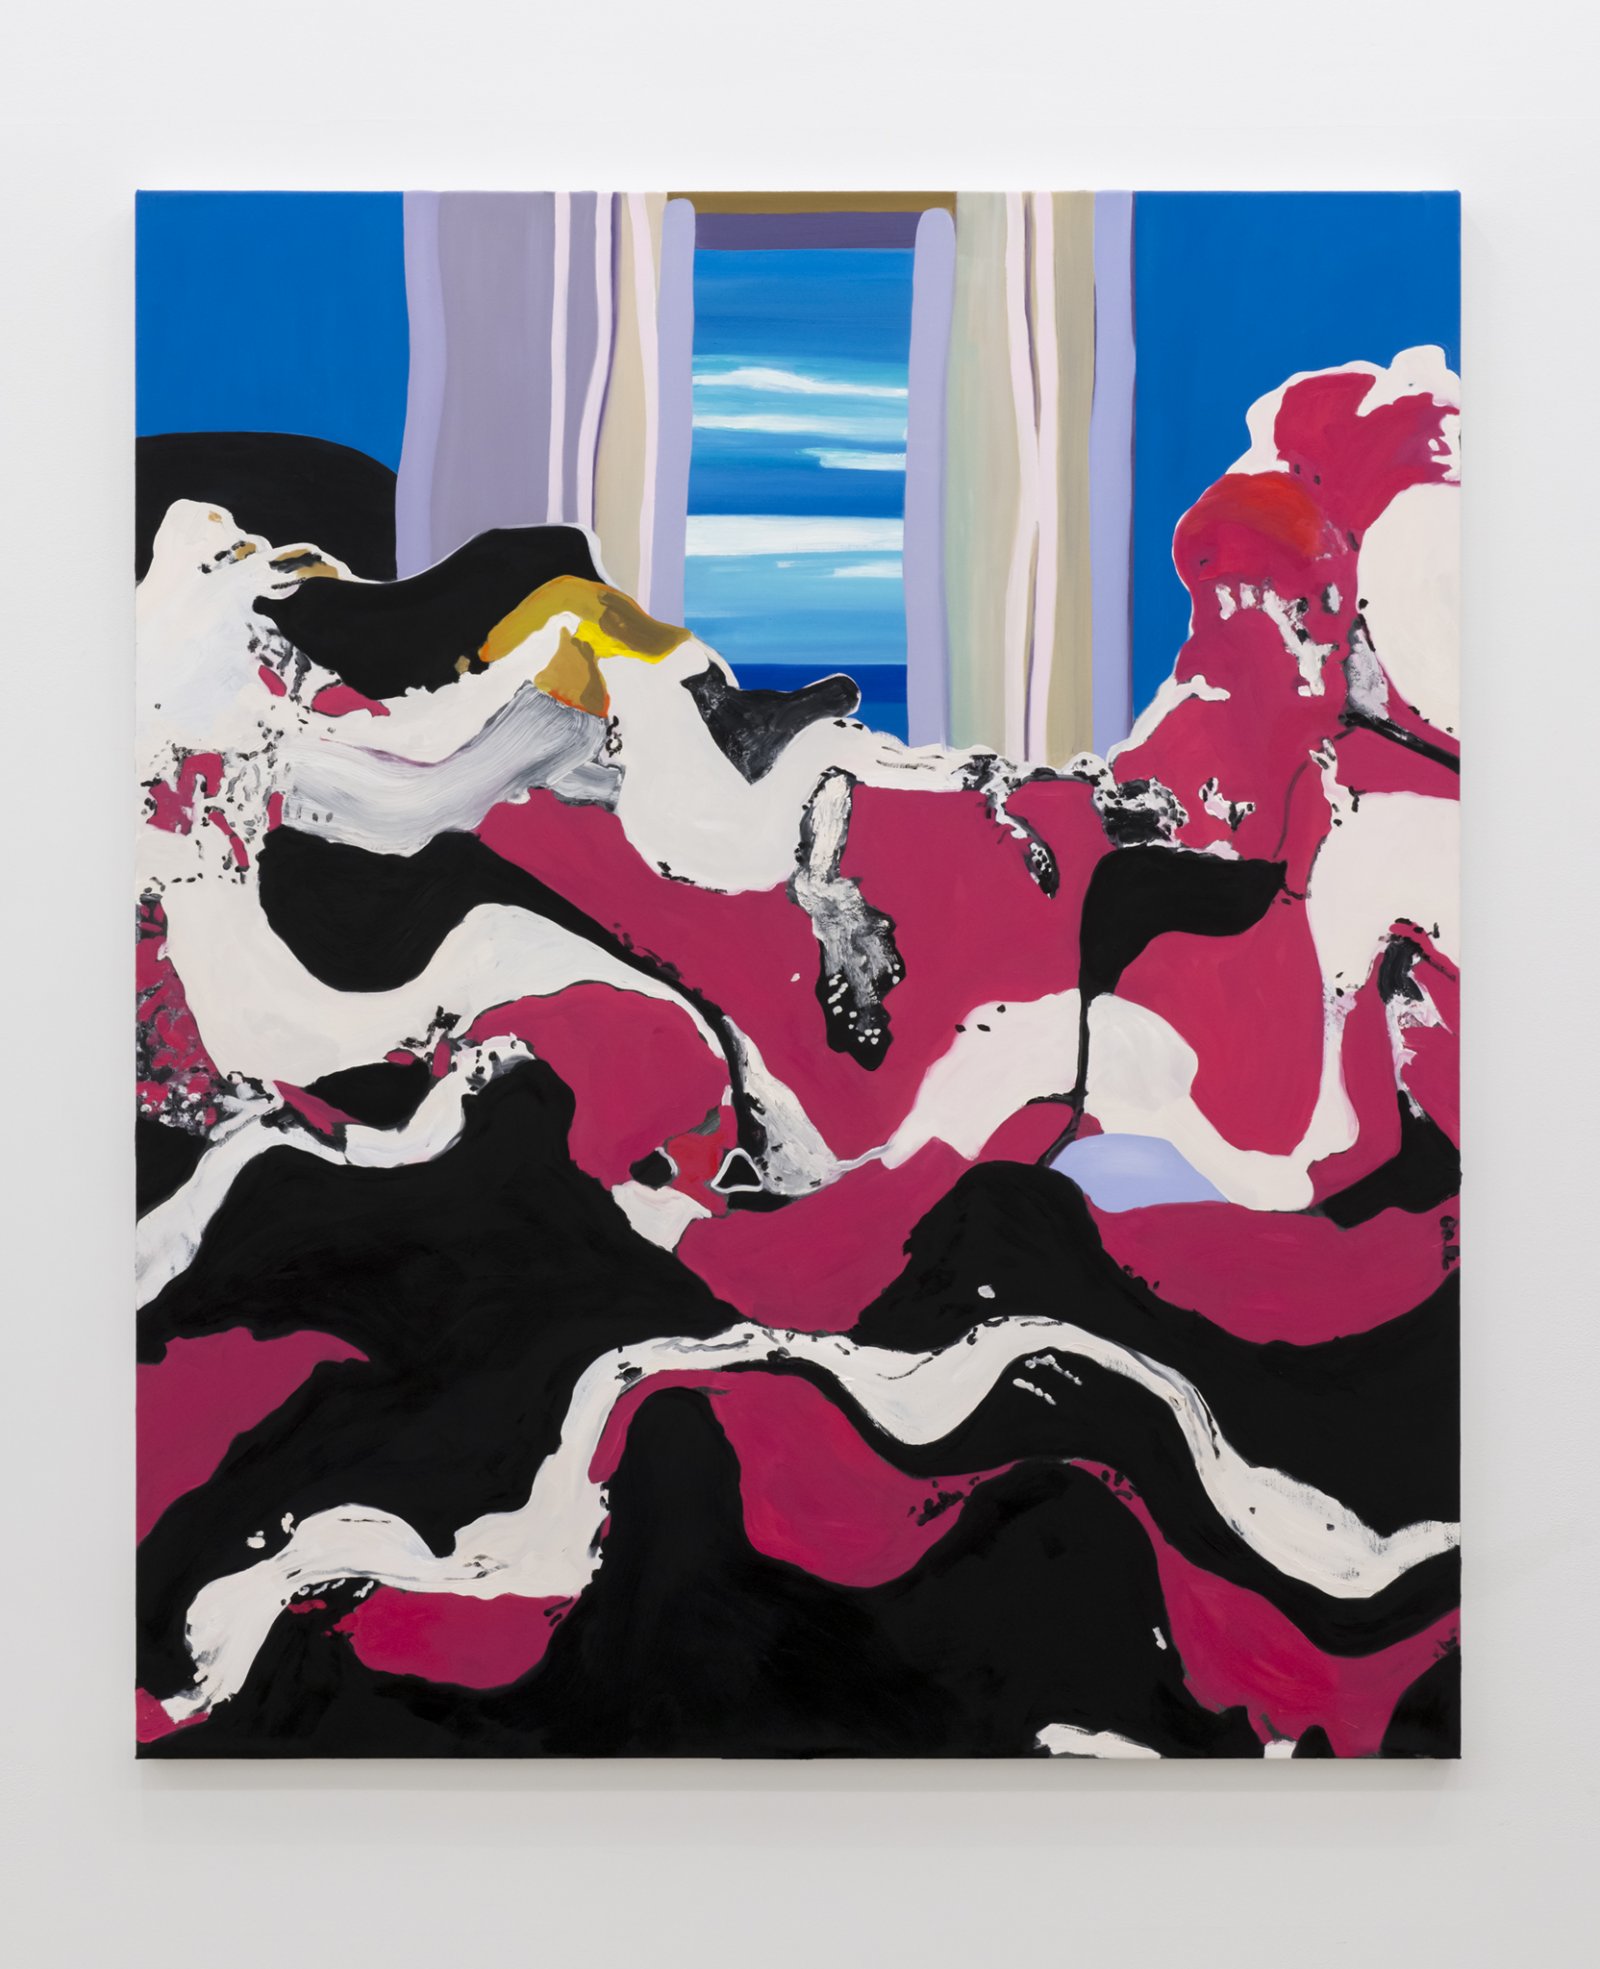 Elizabeth McIntosh, Window, 2017, oil on canvas, 69 x 58 in. (175 x 147 cm) by Elizabeth McIntosh